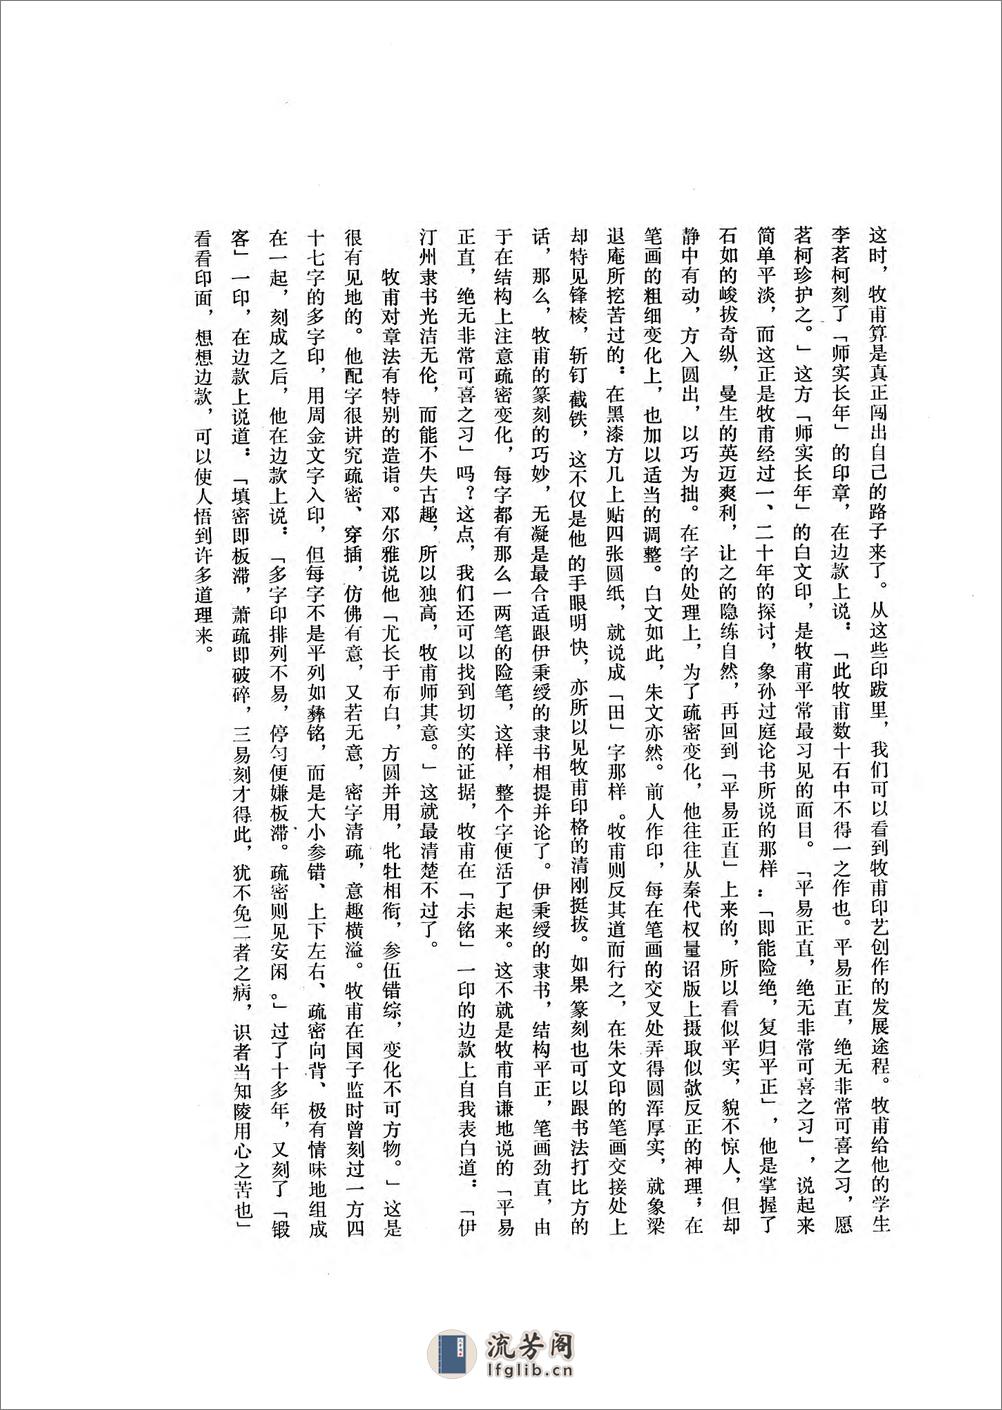 黄牧甫印谱.81130015_85 - 第11页预览图